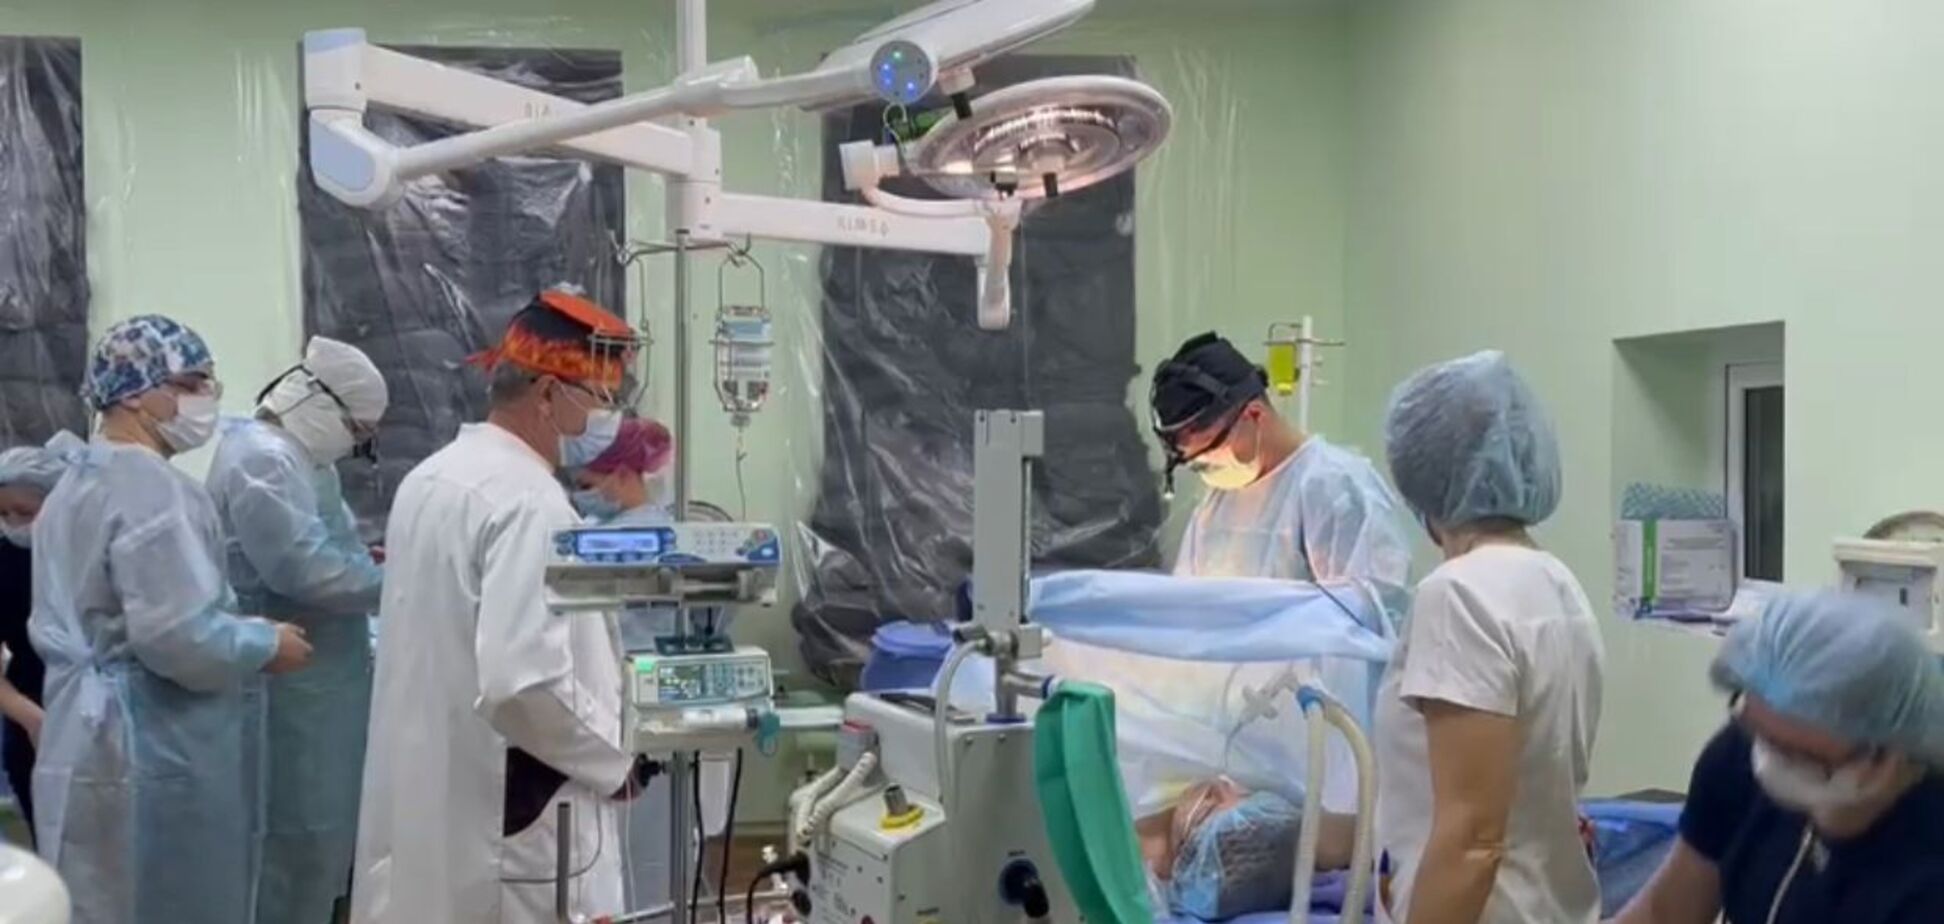 Відсутність світла не зупинила: у Львові за 30 годин провели дев'ять трансплантацій